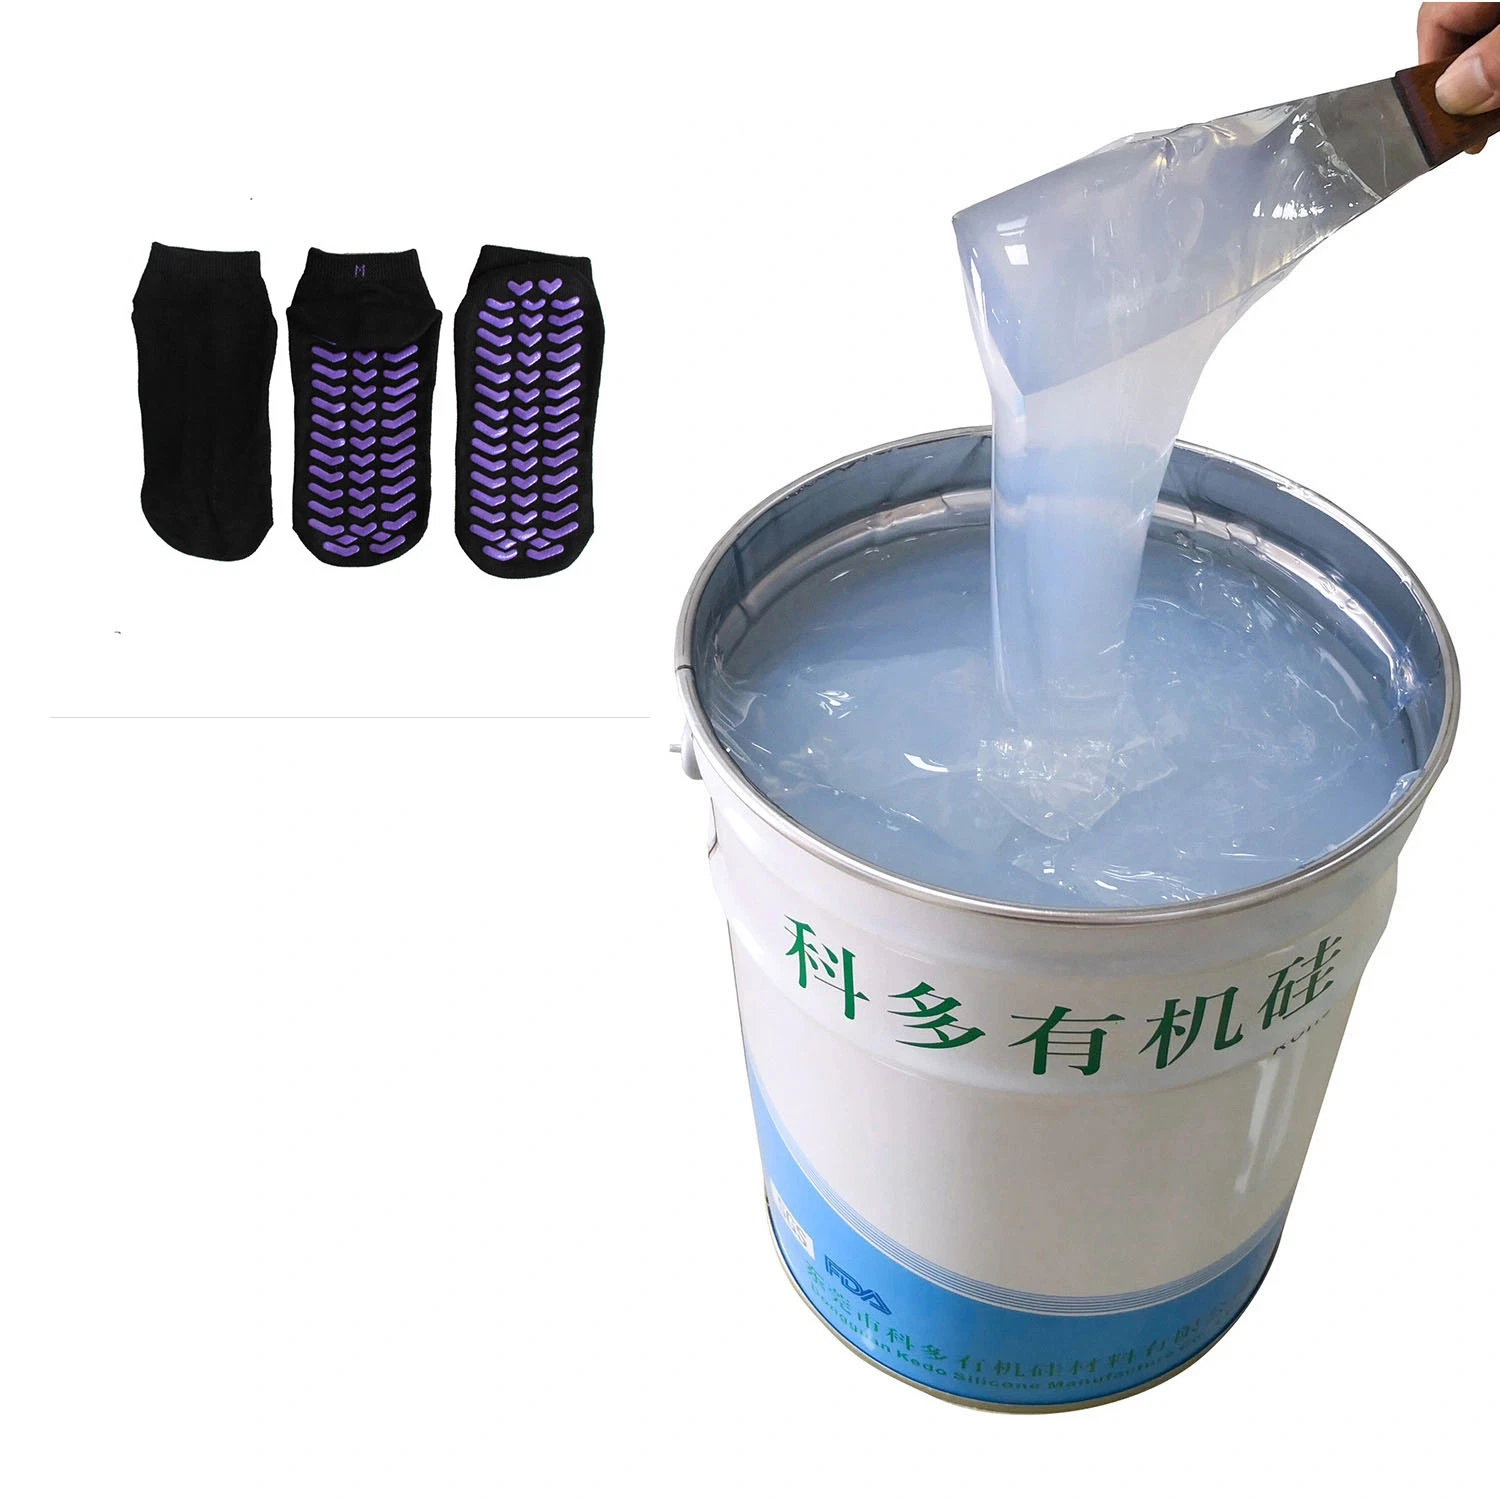 Chaussettes de haute qualité sérigraphiée revêtement antidérapant organiques liquides produits à base de silicone